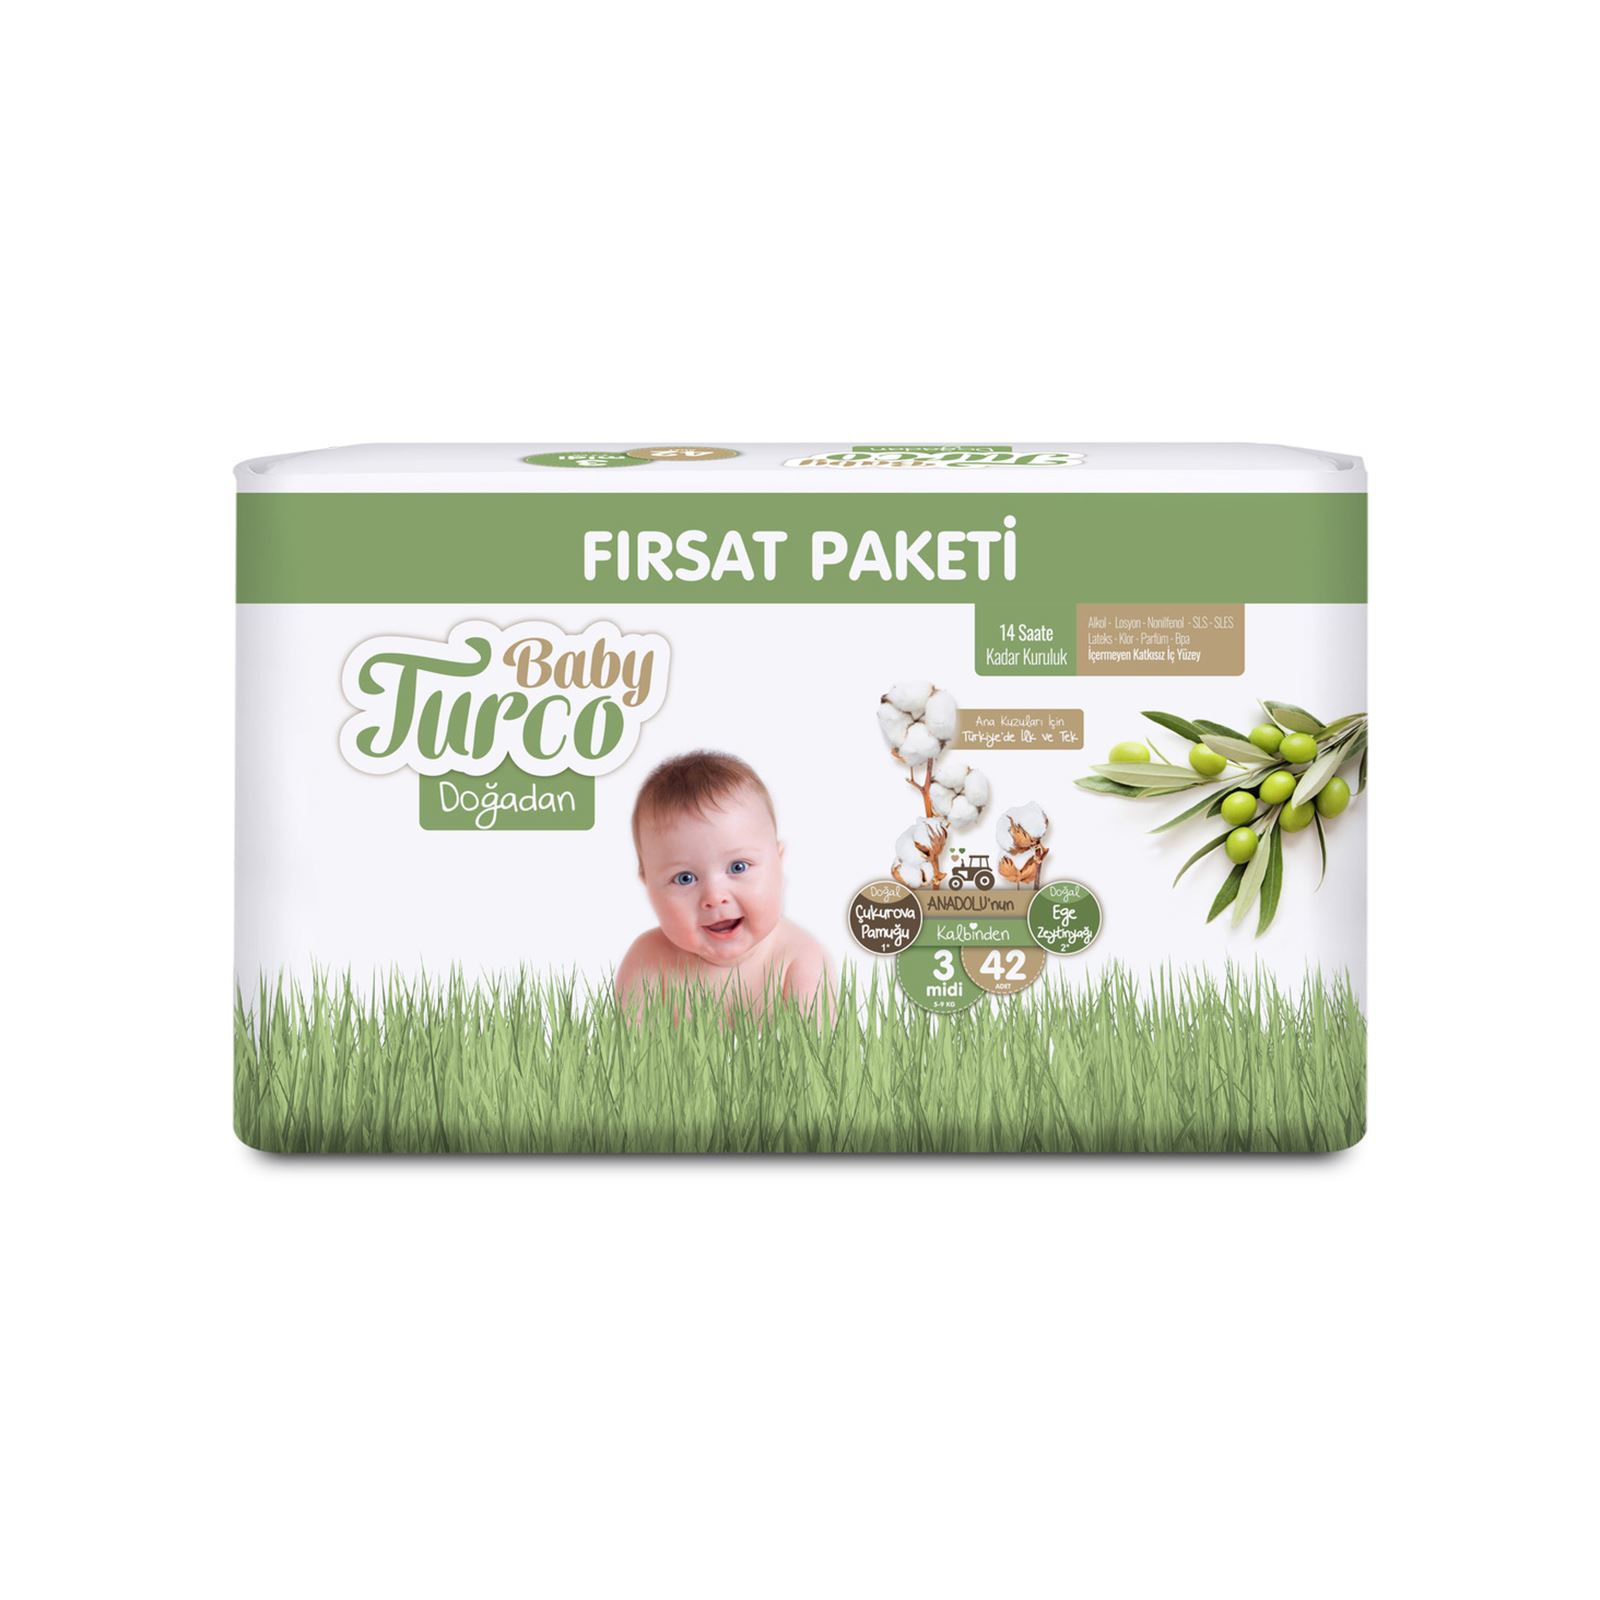 Baby Turco Doğadan Fırsat Paketi Bebek Bezi 3 Midi Numara 42 Adet